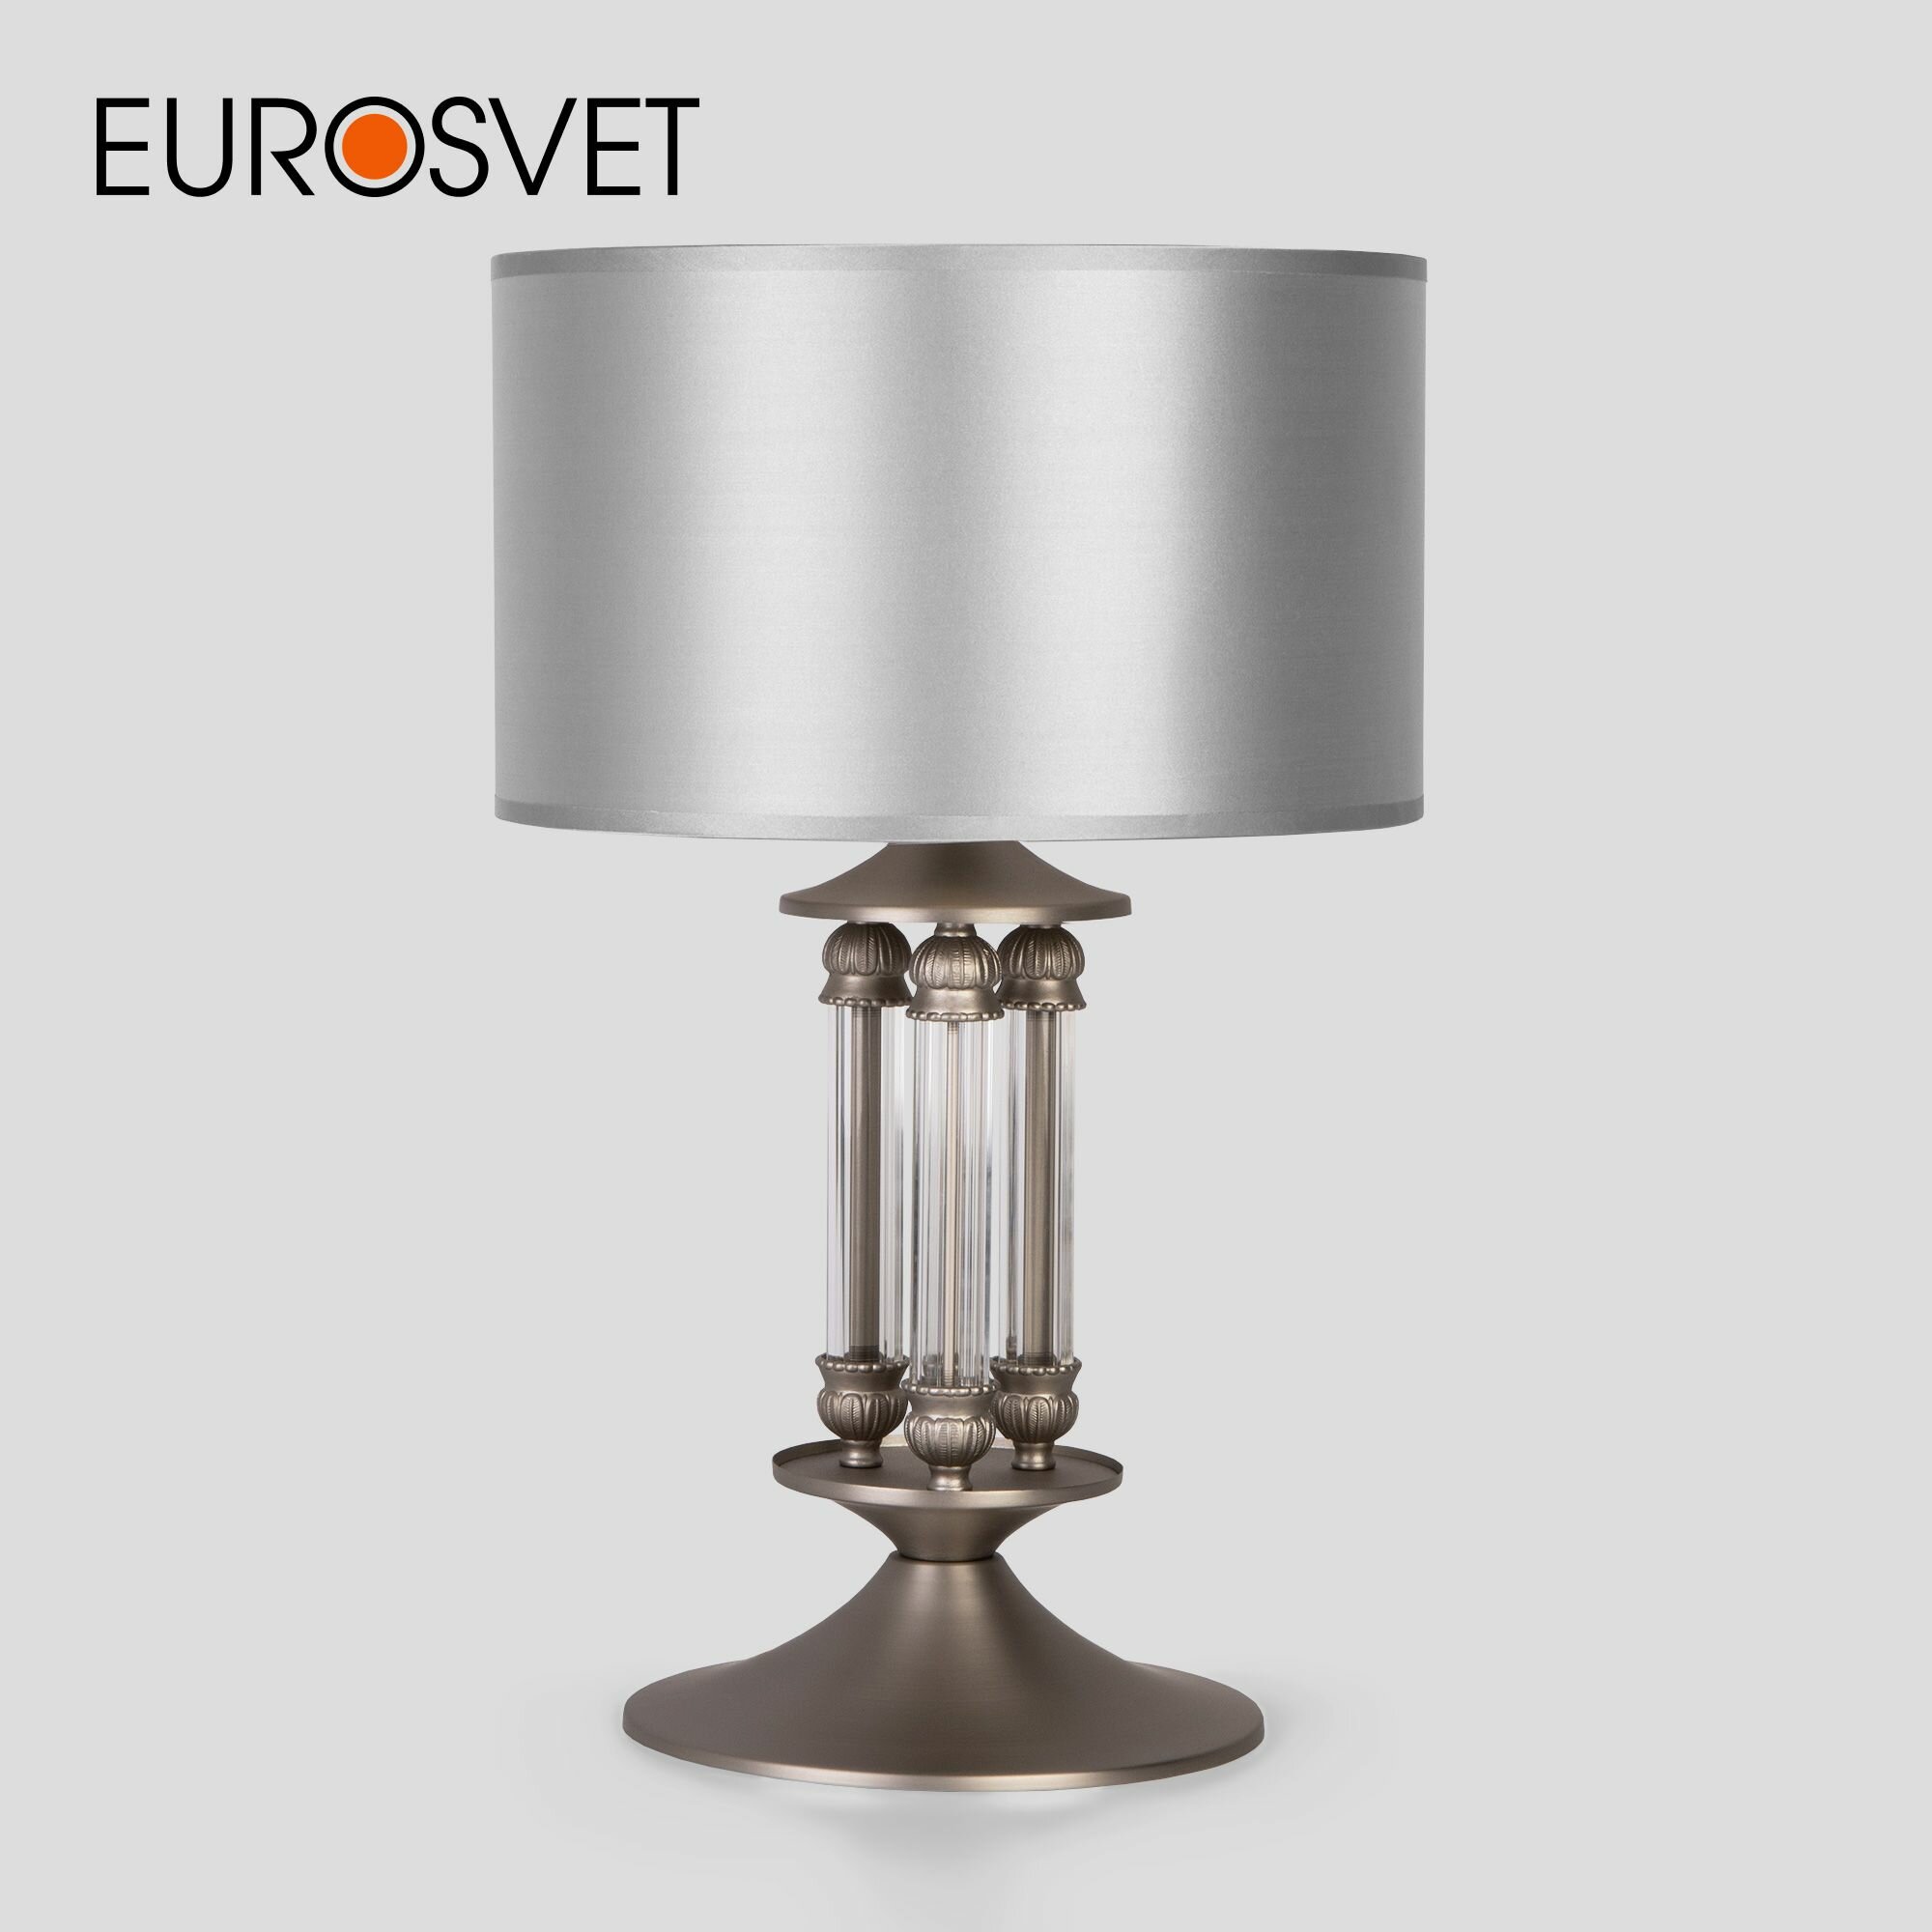 Классическая настольная лампа с абажуром Eurosvet 01045/1 сатин-никель